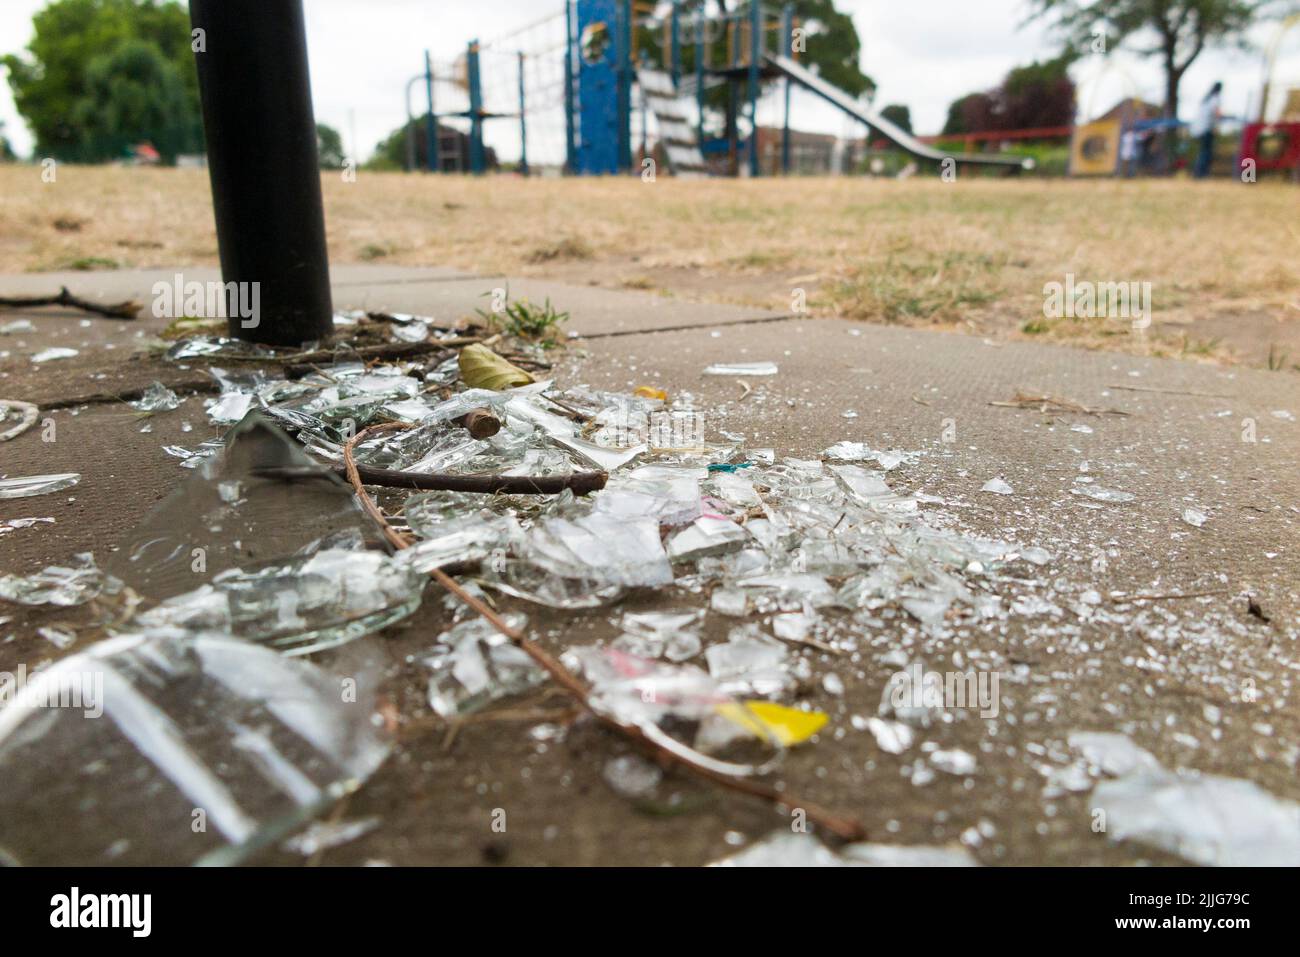 Bouteille de verre cassée, laissée par le vandalisme, dans une aire de jeux pour enfants. Les bords tranchants peuvent facilement couper gravement un enfant. Twickenham. Londres. ROYAUME-UNI. (131) Banque D'Images